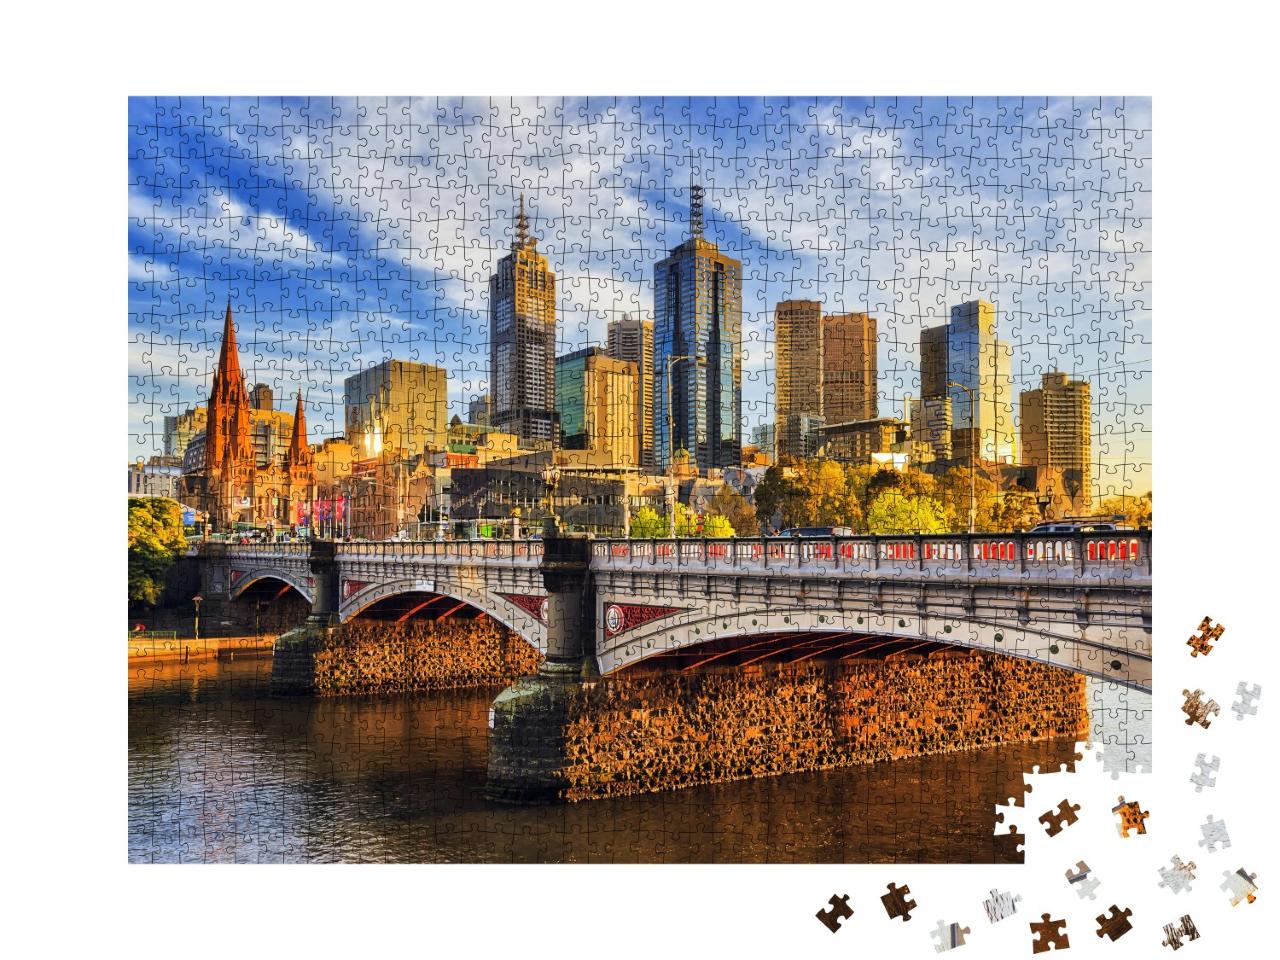 Puzzle de 1000 pièces « Matin au-dessus des gratte-ciel de Melbourne »